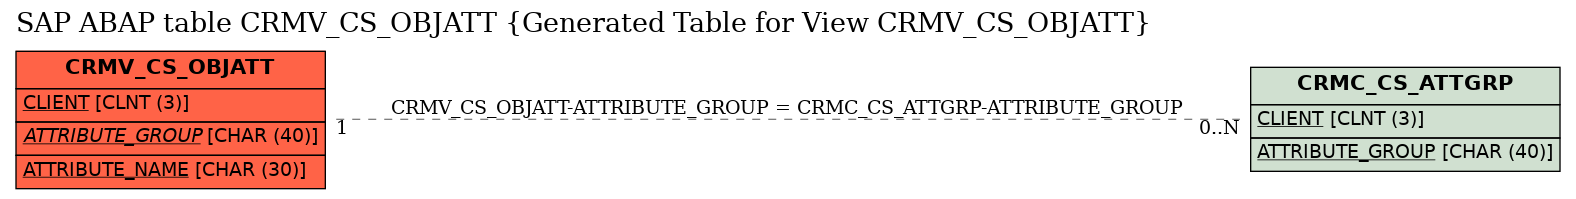 E-R Diagram for table CRMV_CS_OBJATT (Generated Table for View CRMV_CS_OBJATT)